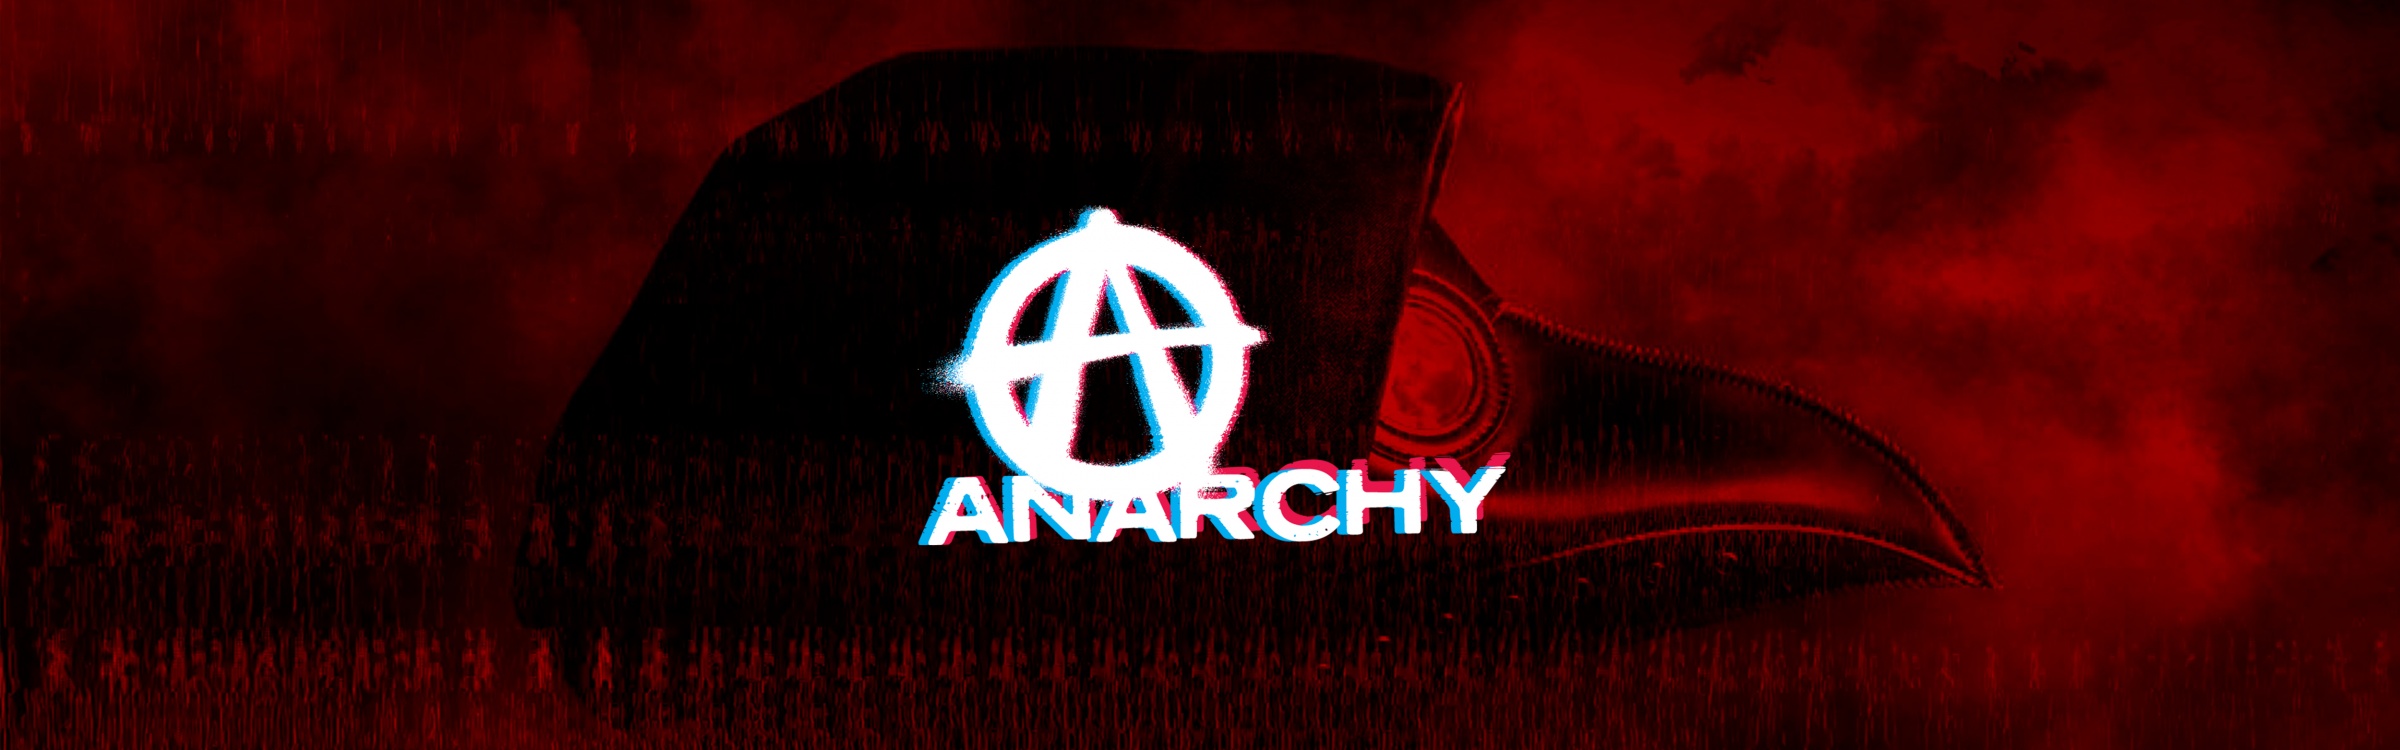 anarchy new